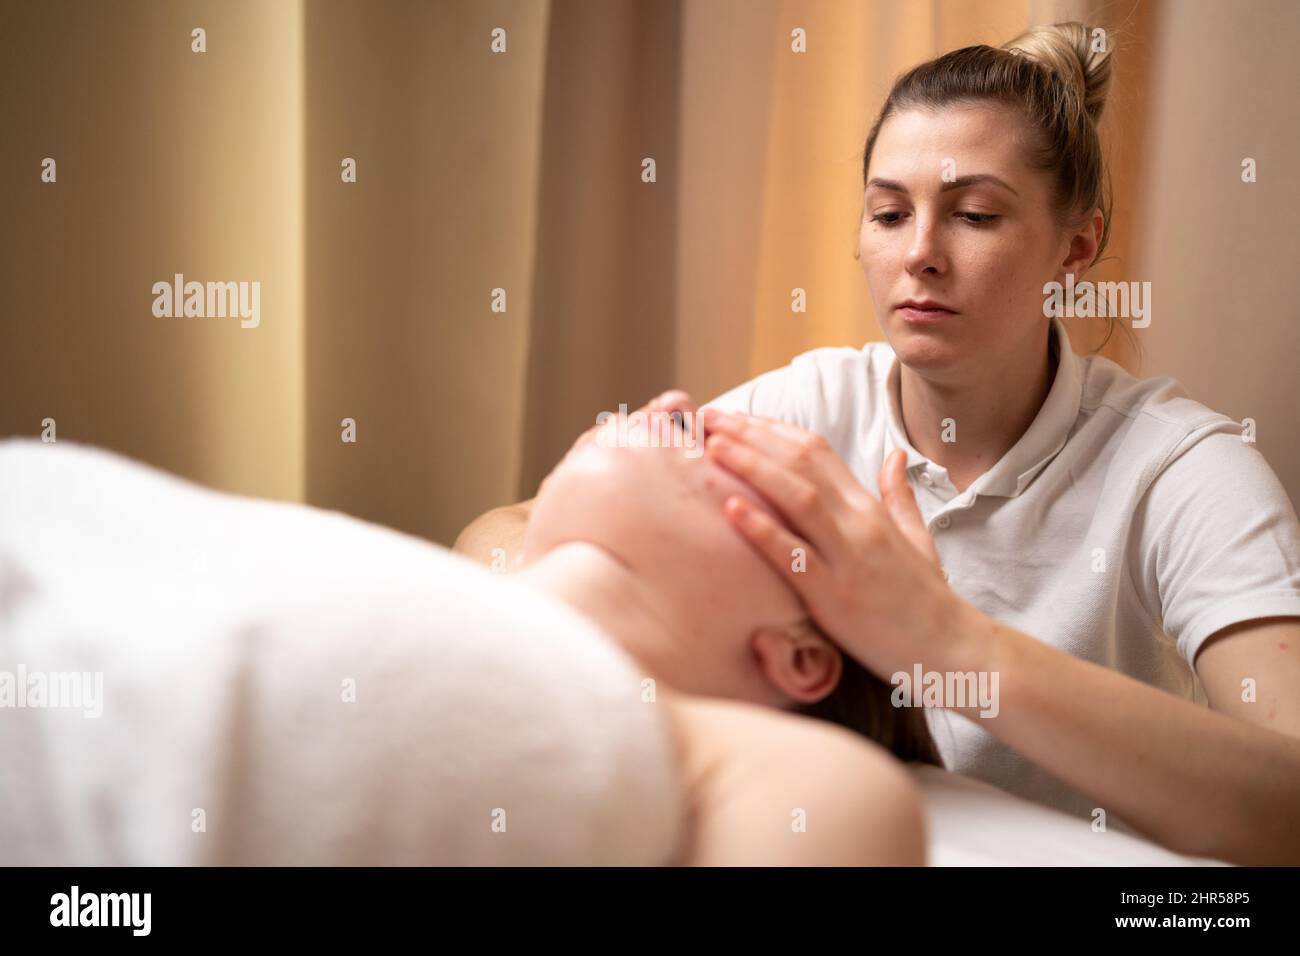 Masseur Therapeut tun Gesichtsmassage der Frau im Spa-Salon, verjüngende Gesichtsmassage Verfahren, gesunde Haut und Körper Konzept. Spa-Behandlungen in einem Stockfoto